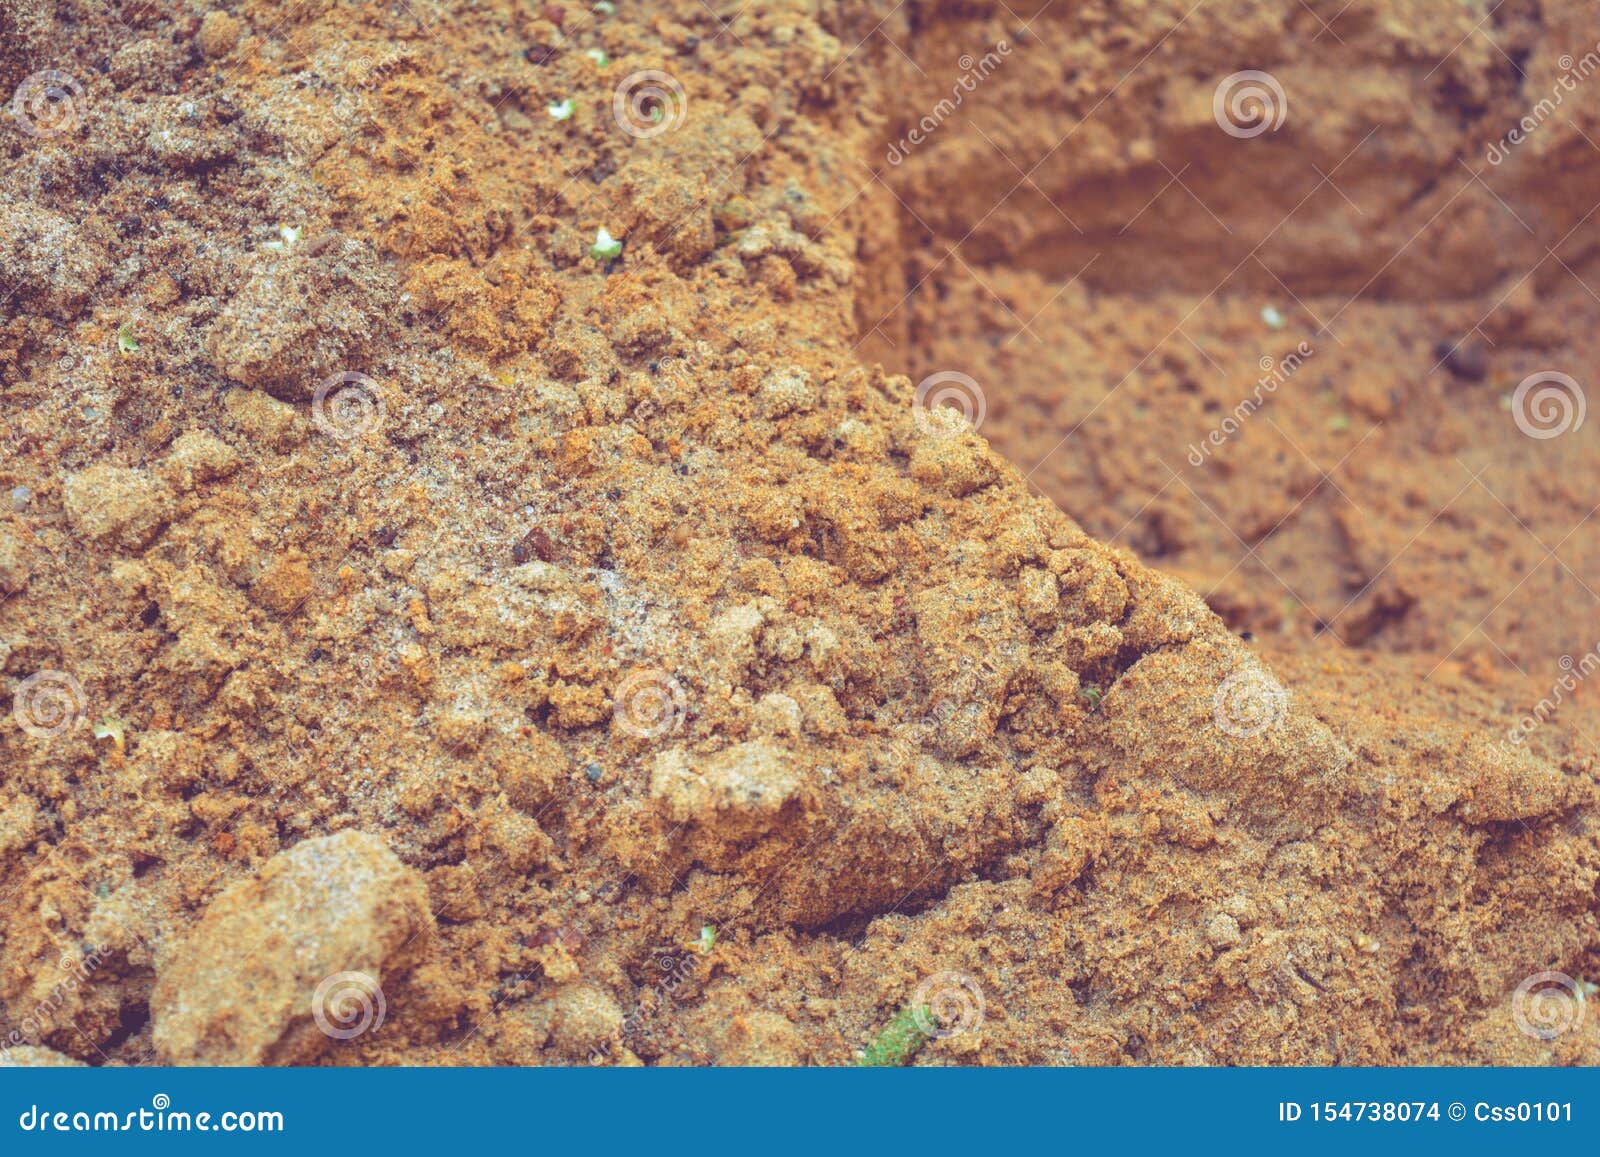 Sandy Soil - The Dirt on Dirt